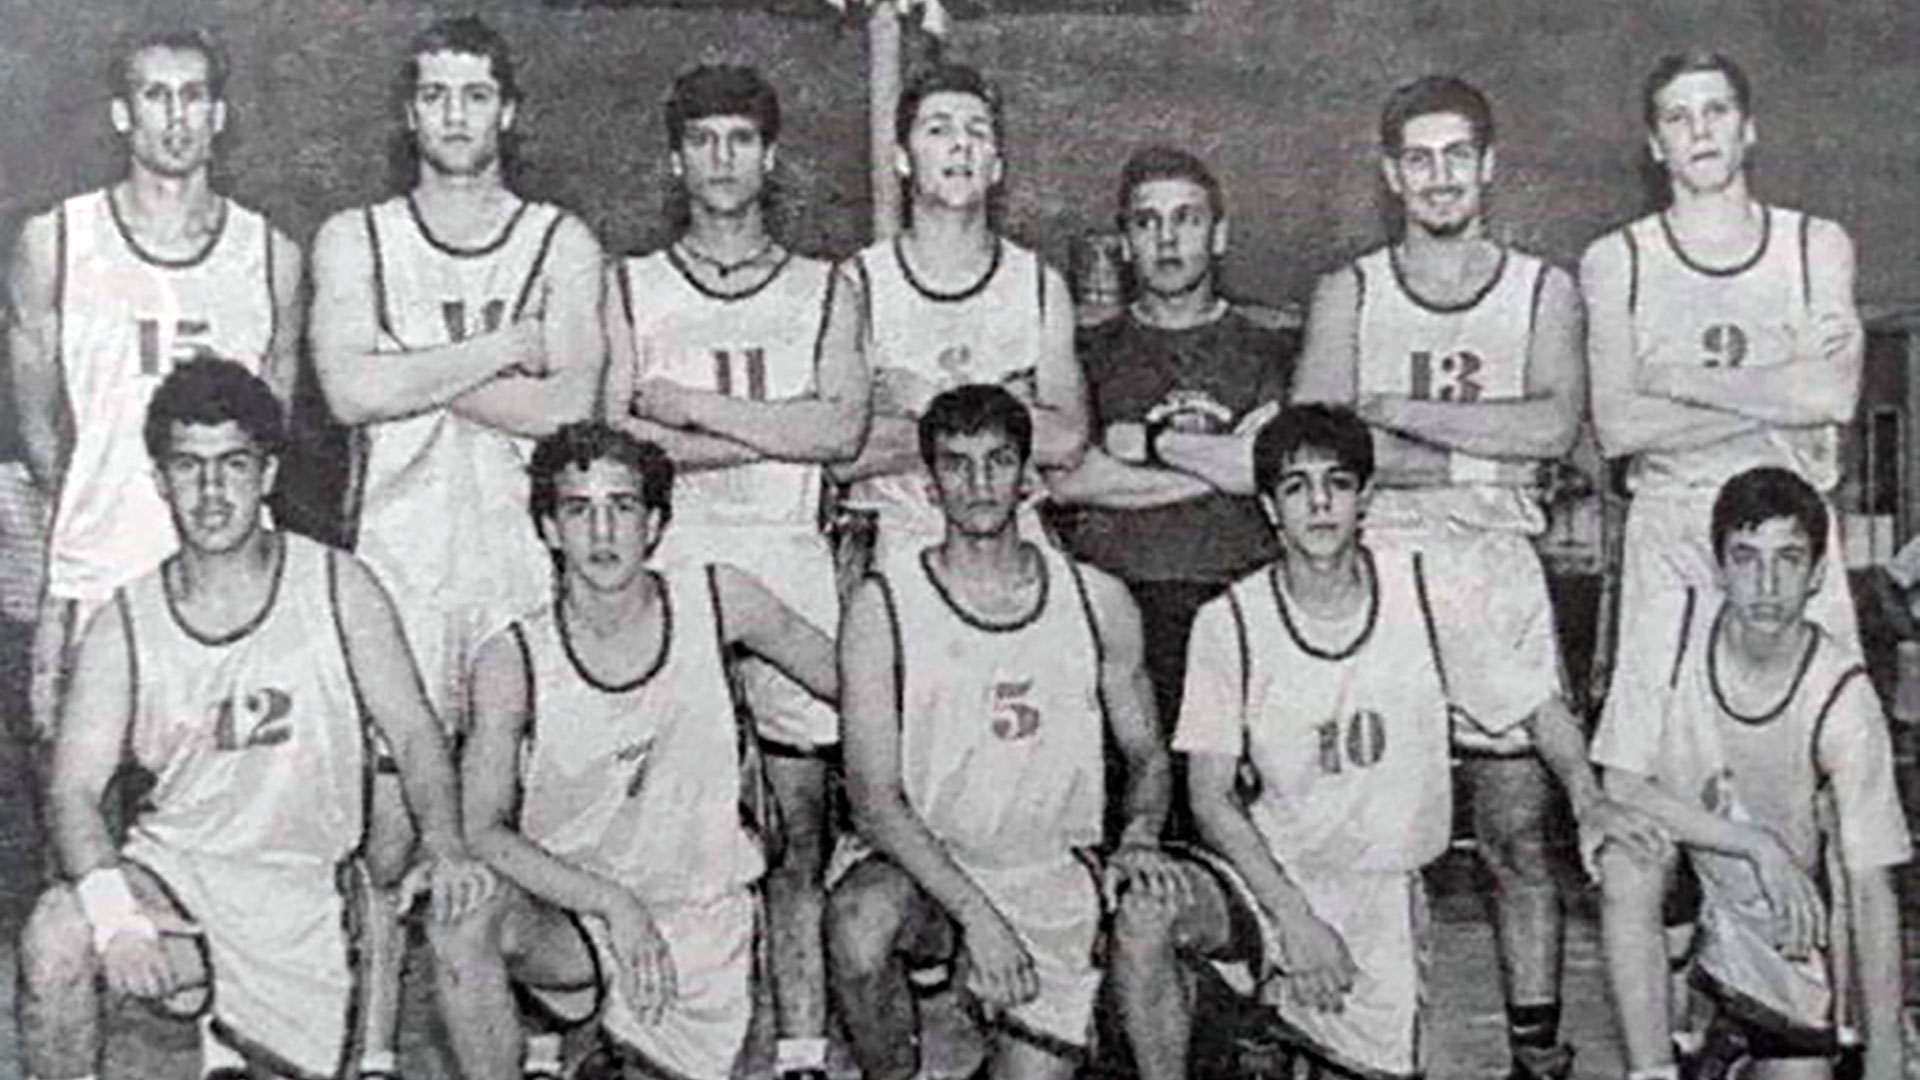 El equipo Bahiense del Norte era un equipo con muchos jóvenes, el de menor edad era un tal Mau Ginobili (abajo a la derecha)